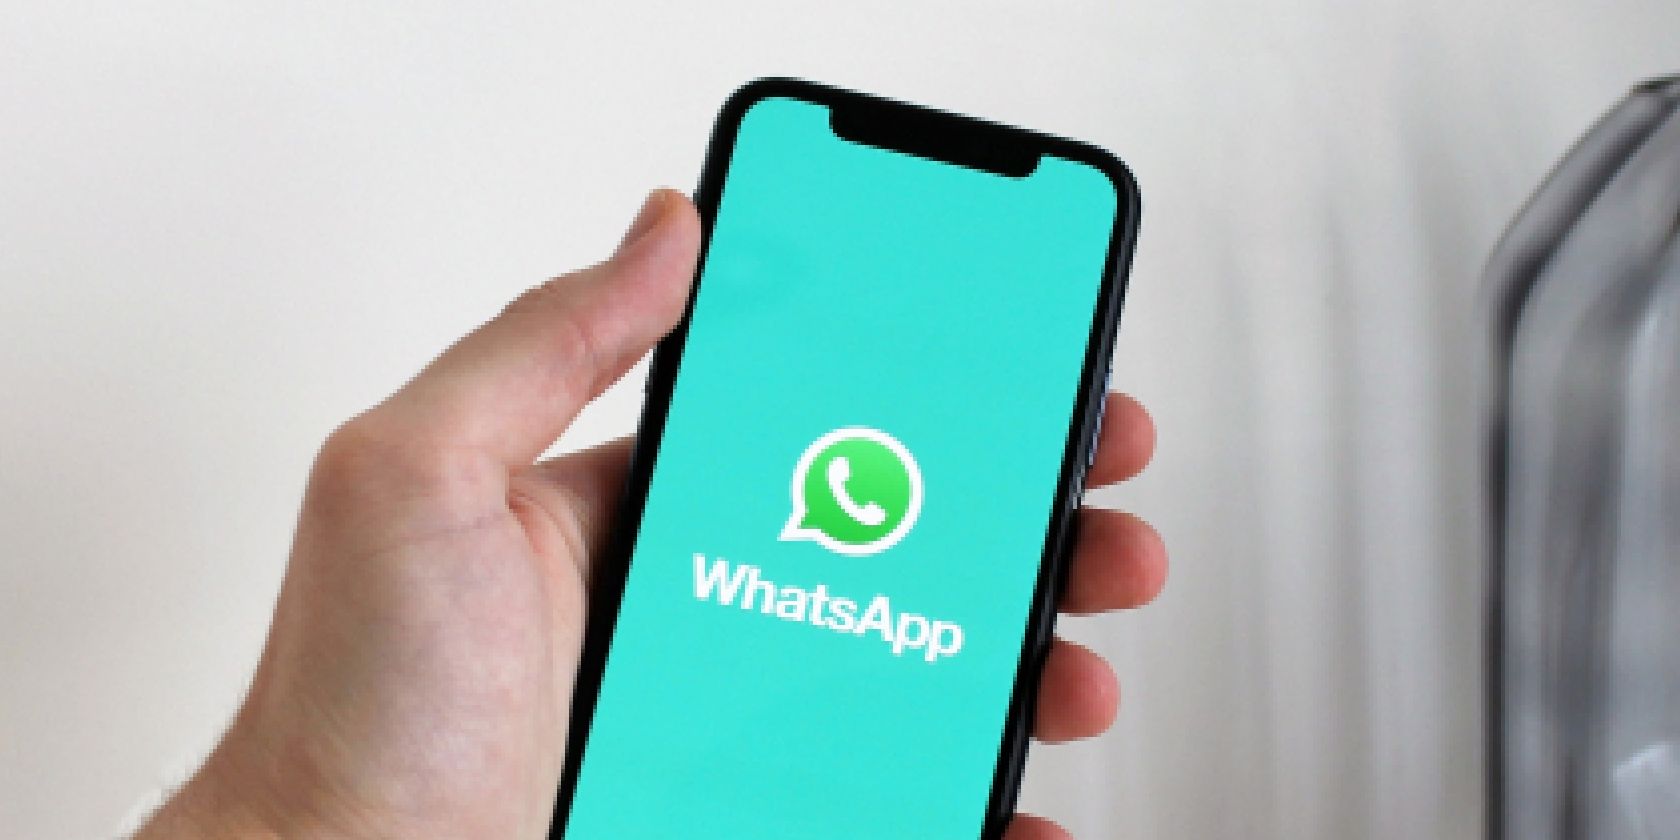 Рука держит iPhone с логотипом WhatsApp на экране